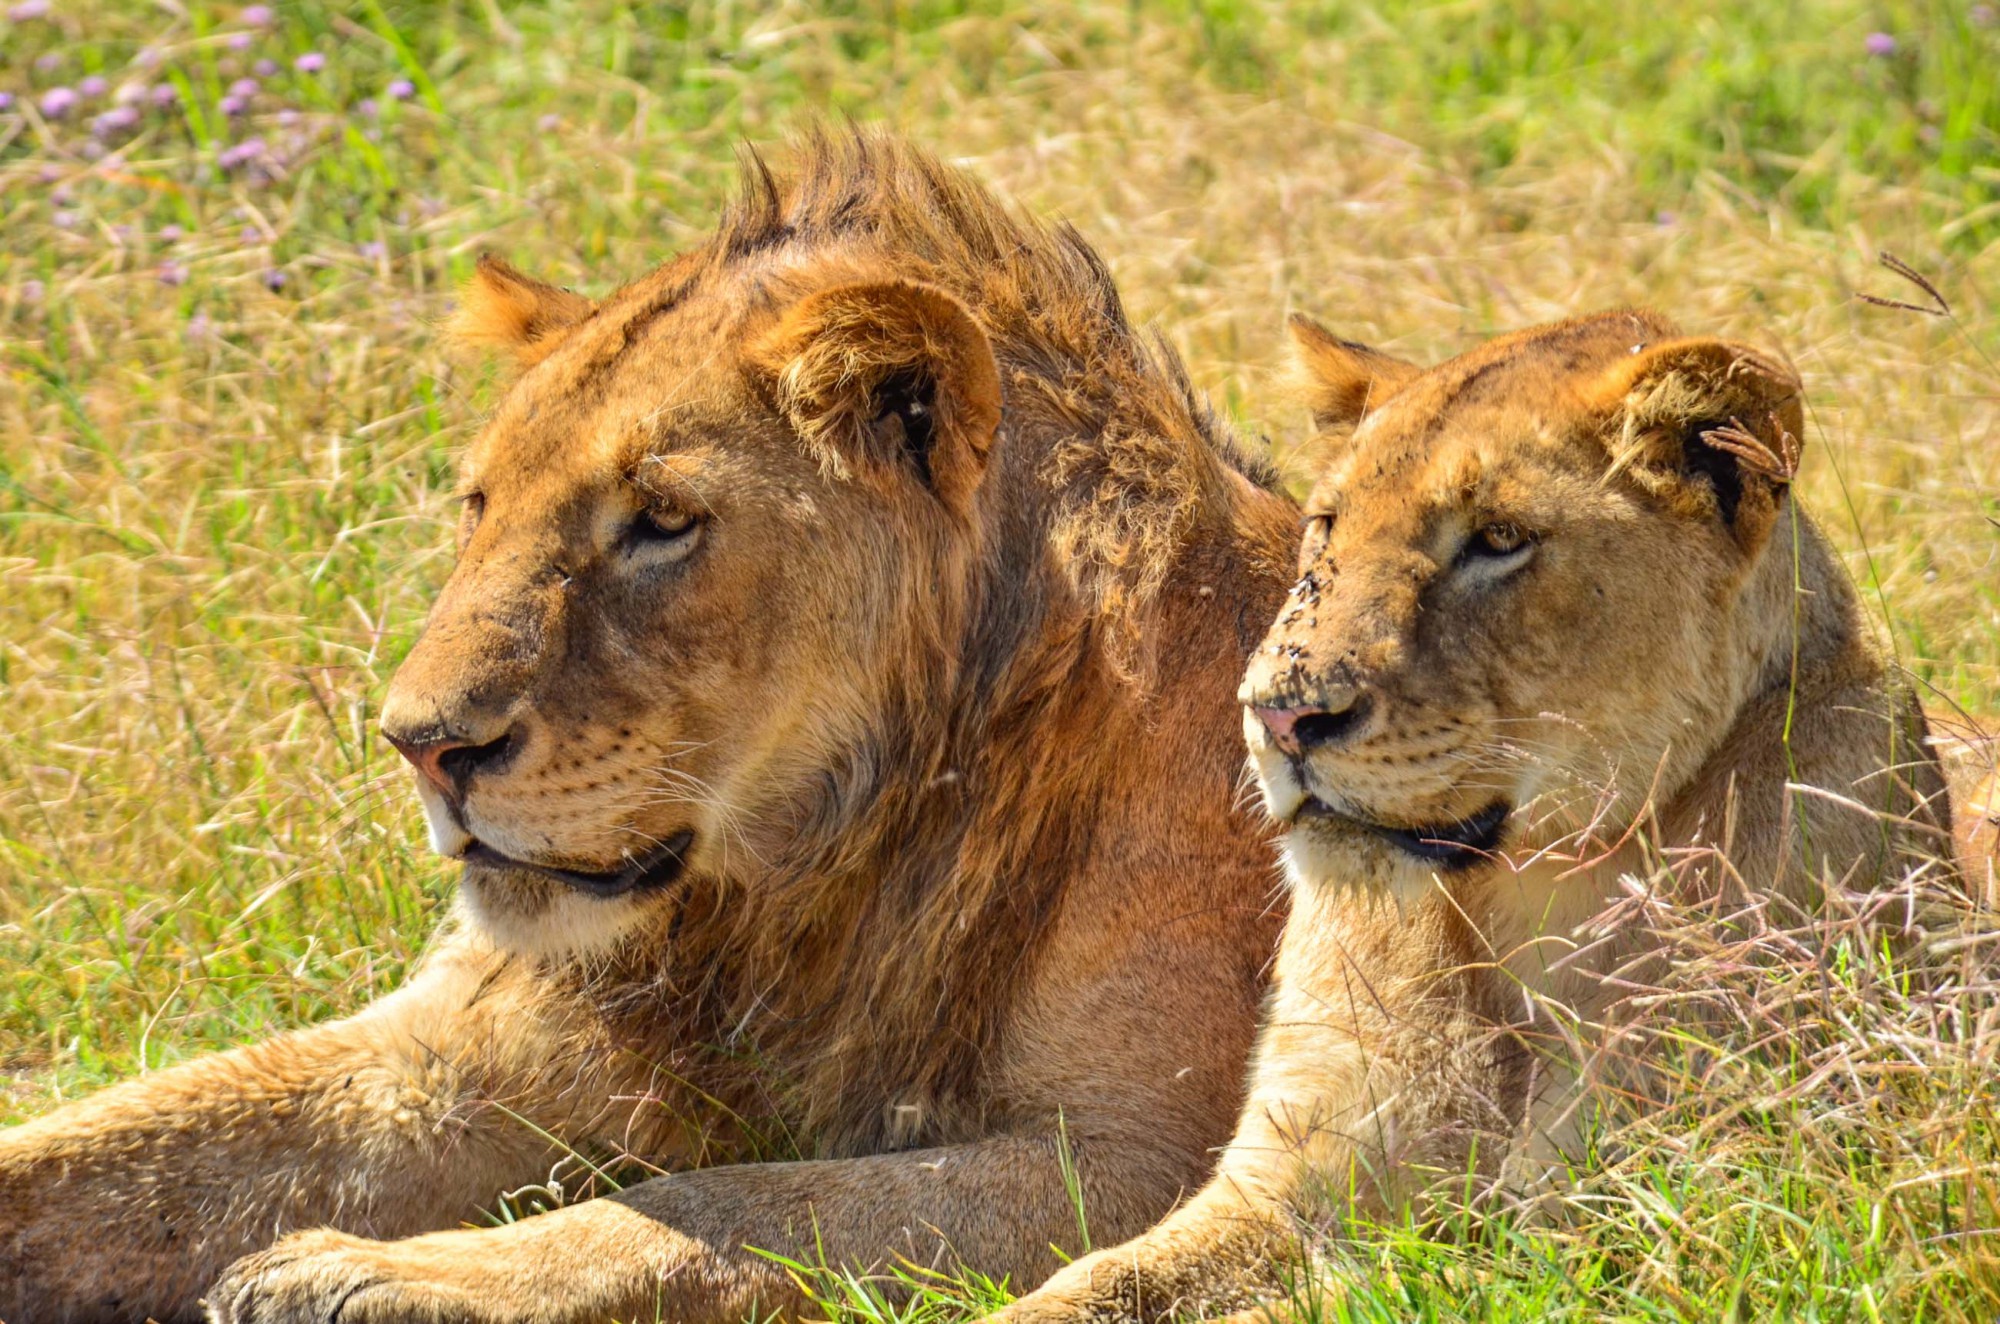 Ngorongoro je místem s nejvyšší koncentrací lvů v Africe